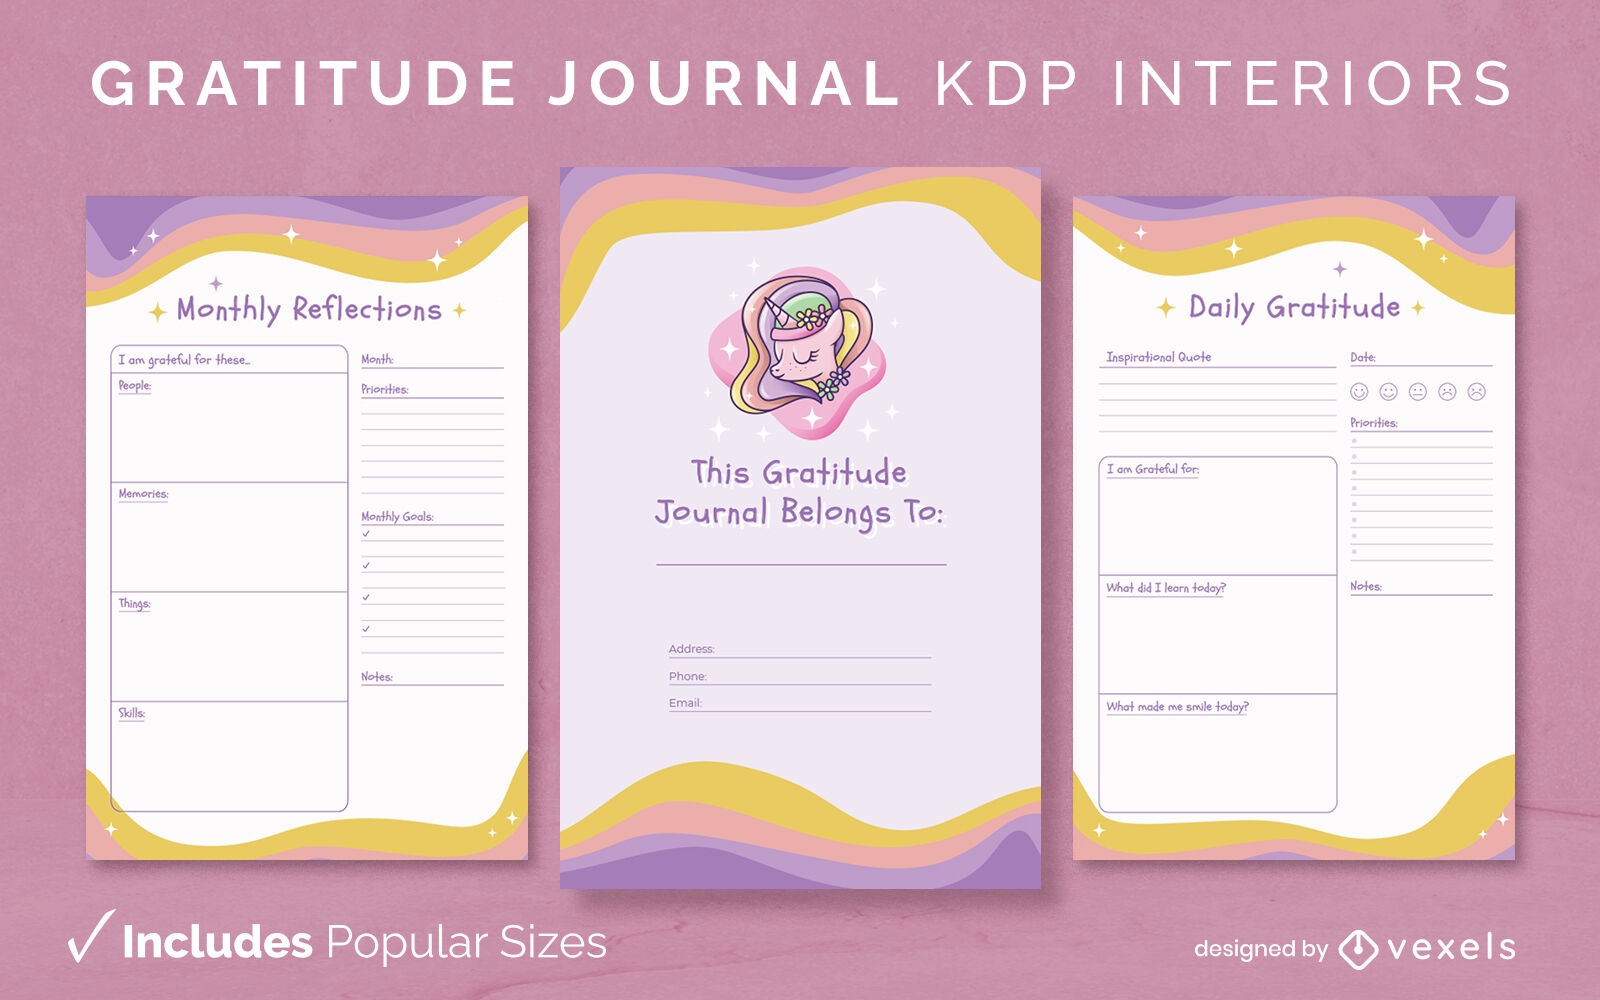 Unicorn Gratitude Journal for Kids : Amazing Gratitude Journal for